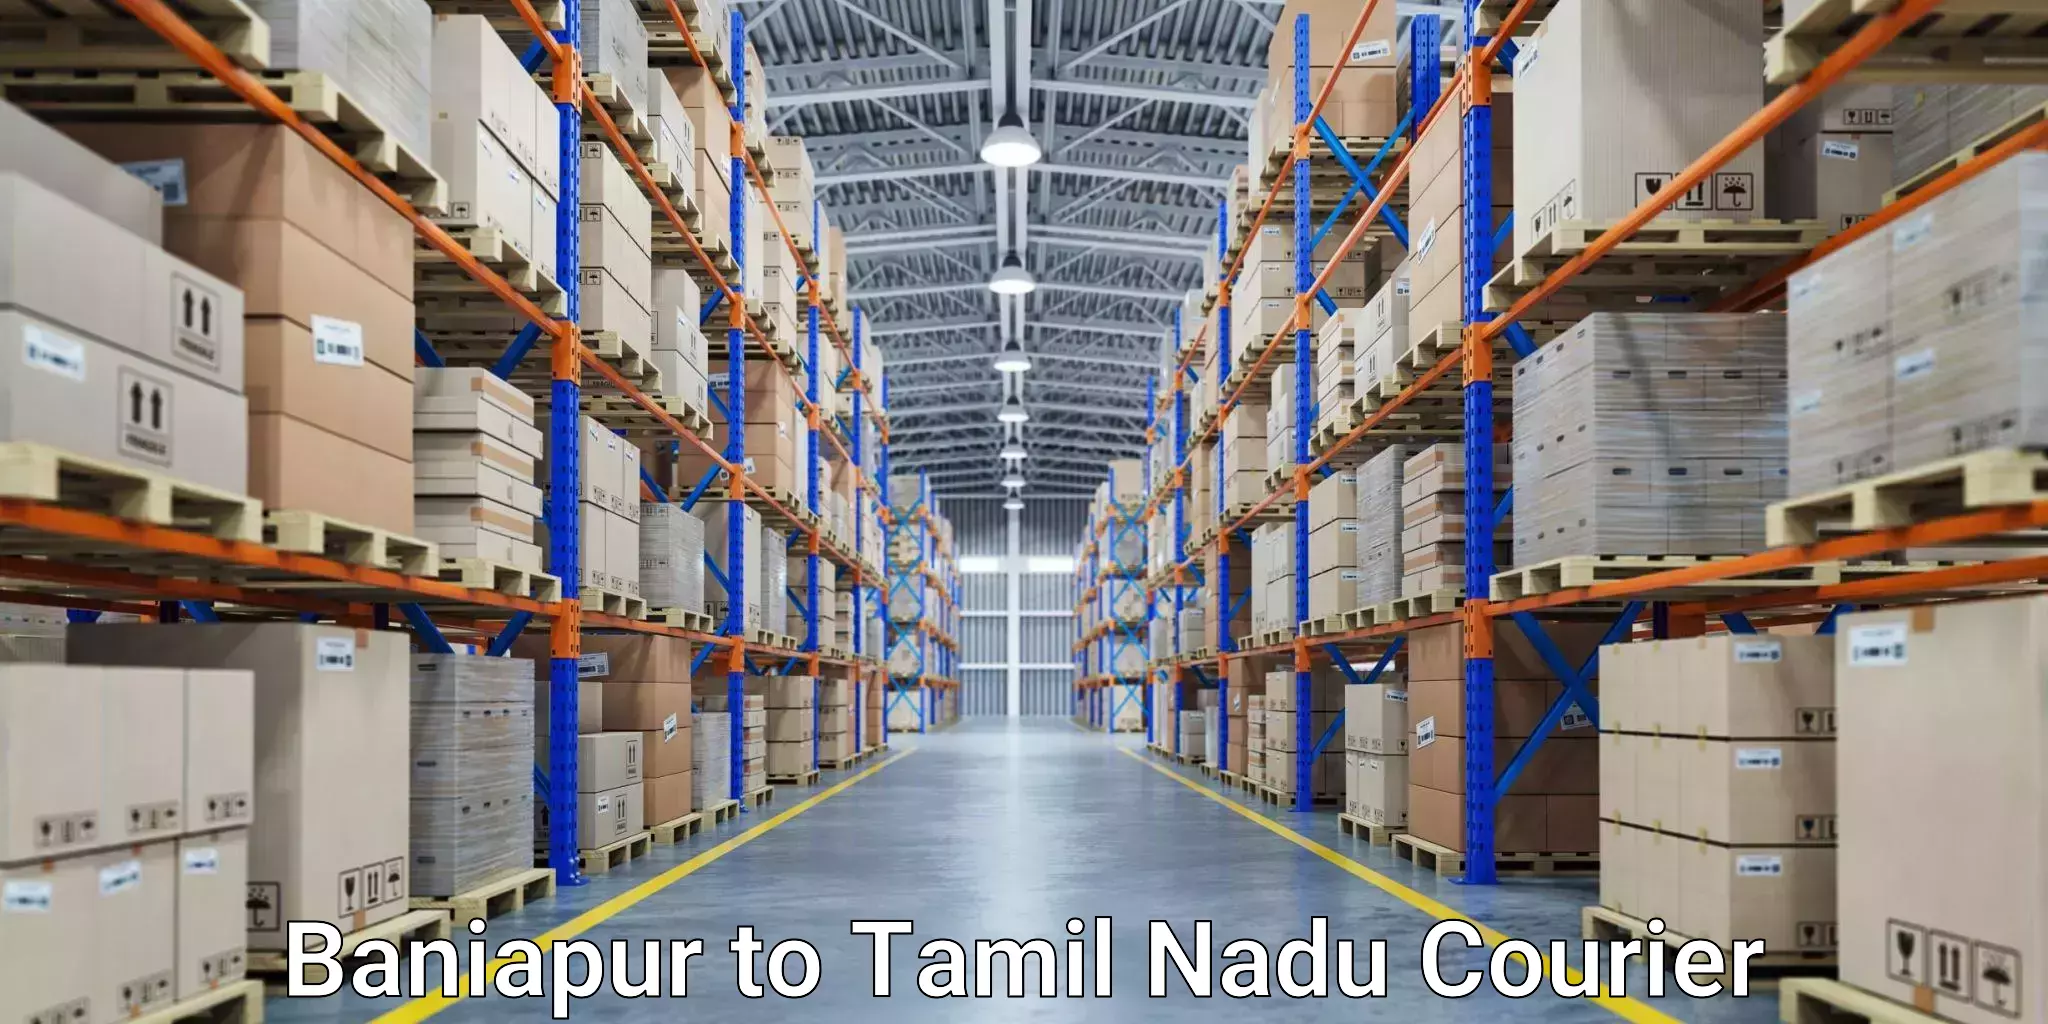 High-performance logistics Baniapur to Namakkal